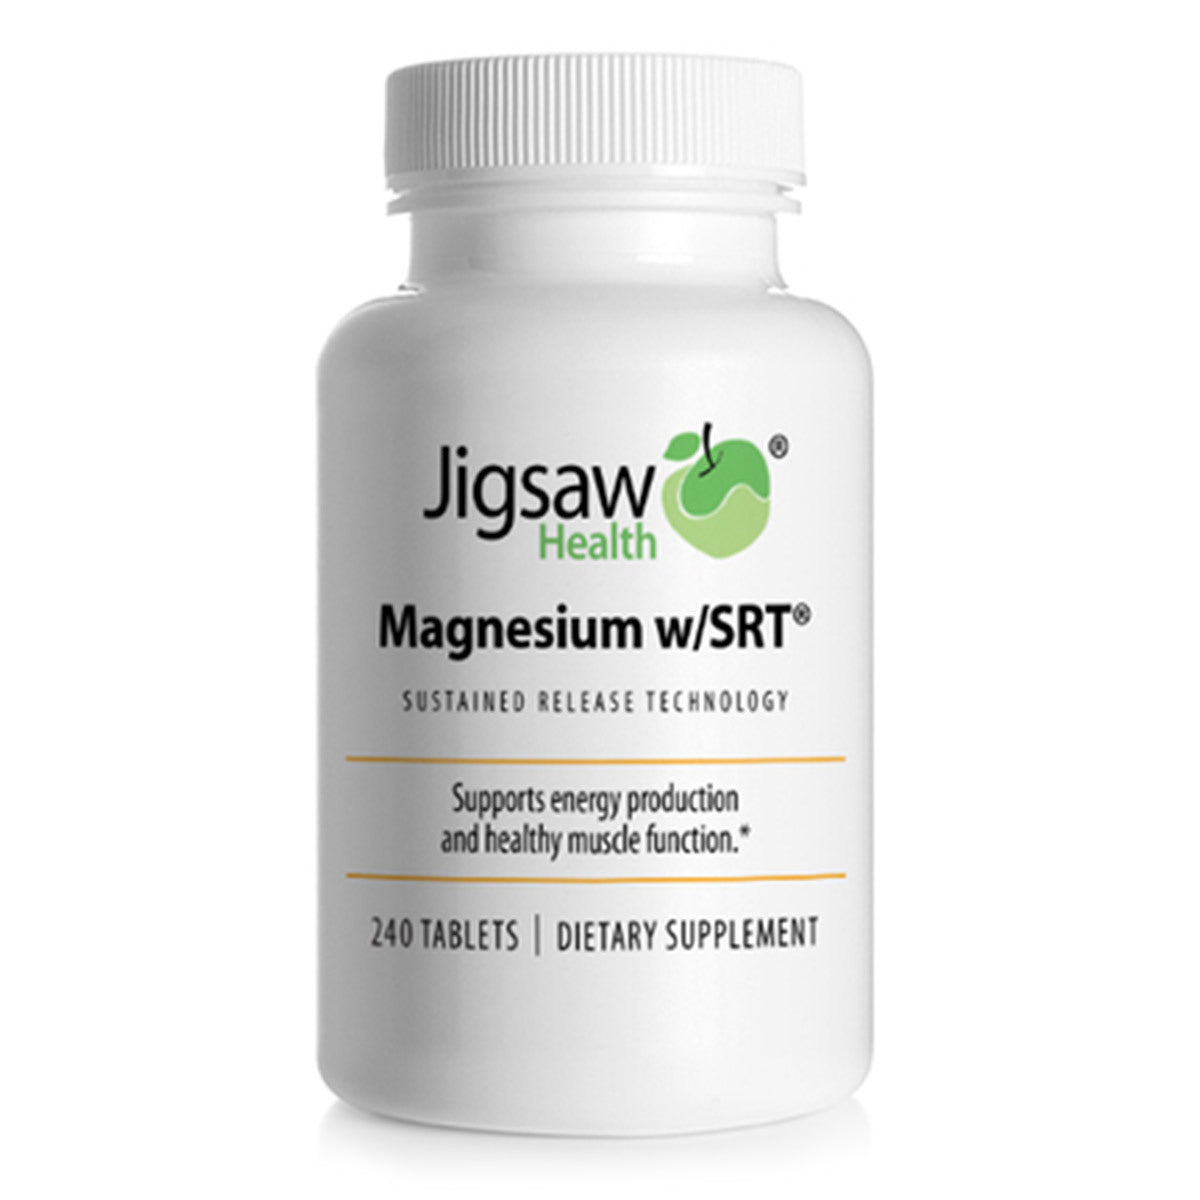 Primary image of Magnesium w/SRT